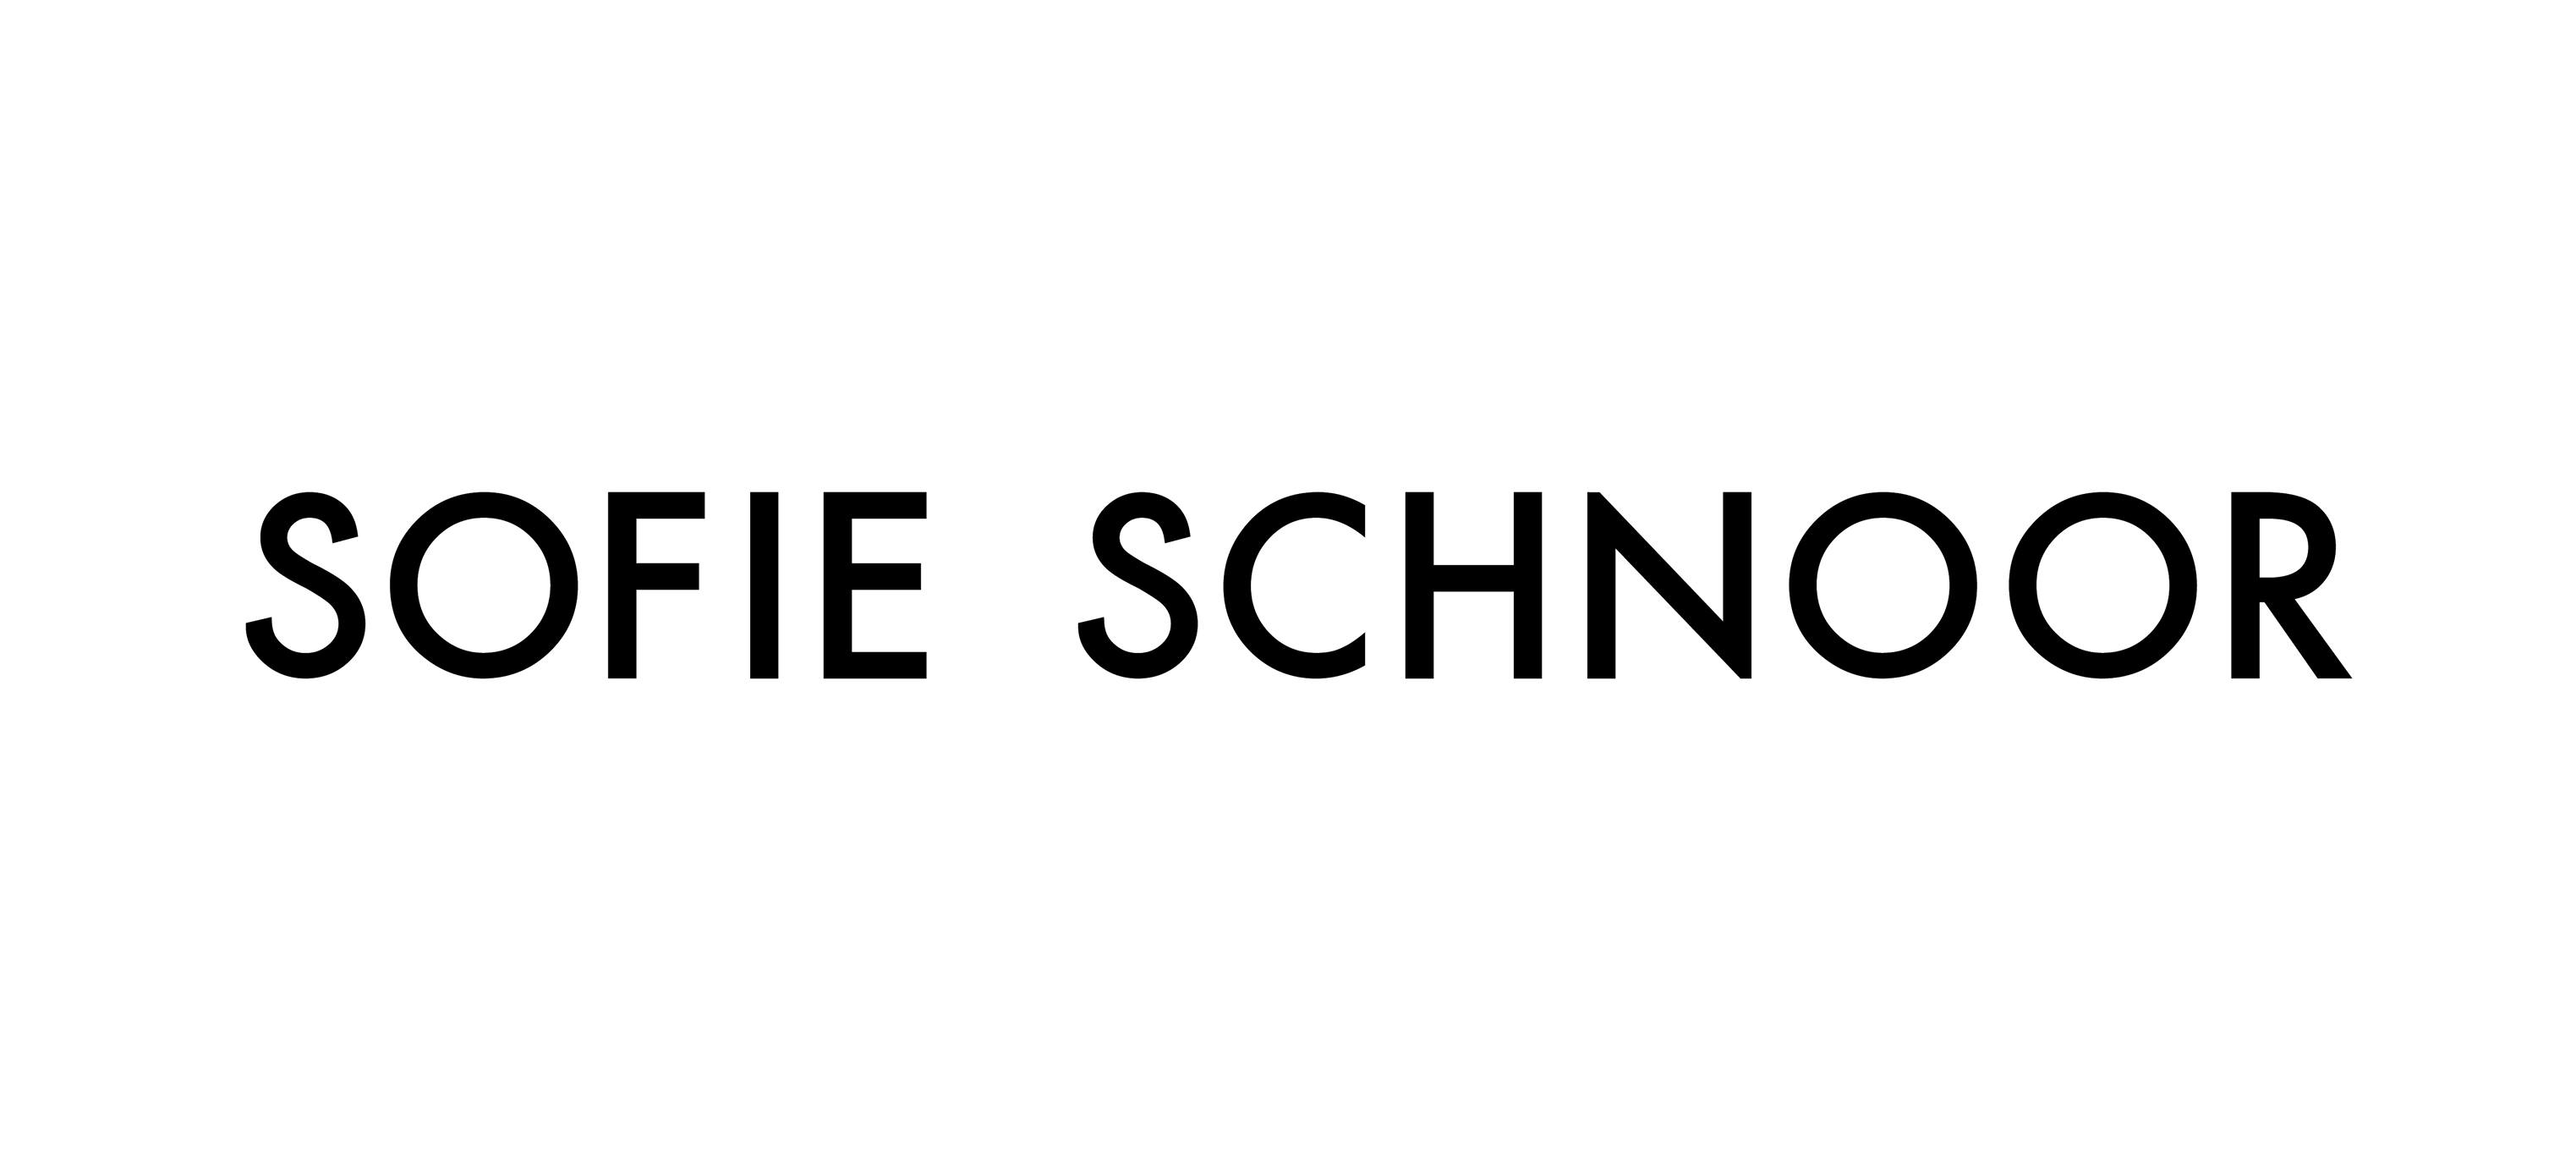 etisk Tilskud I første omgang Sofie Schnoor - Dametøj & sko fra Sofie Schnoor, se udvalget online